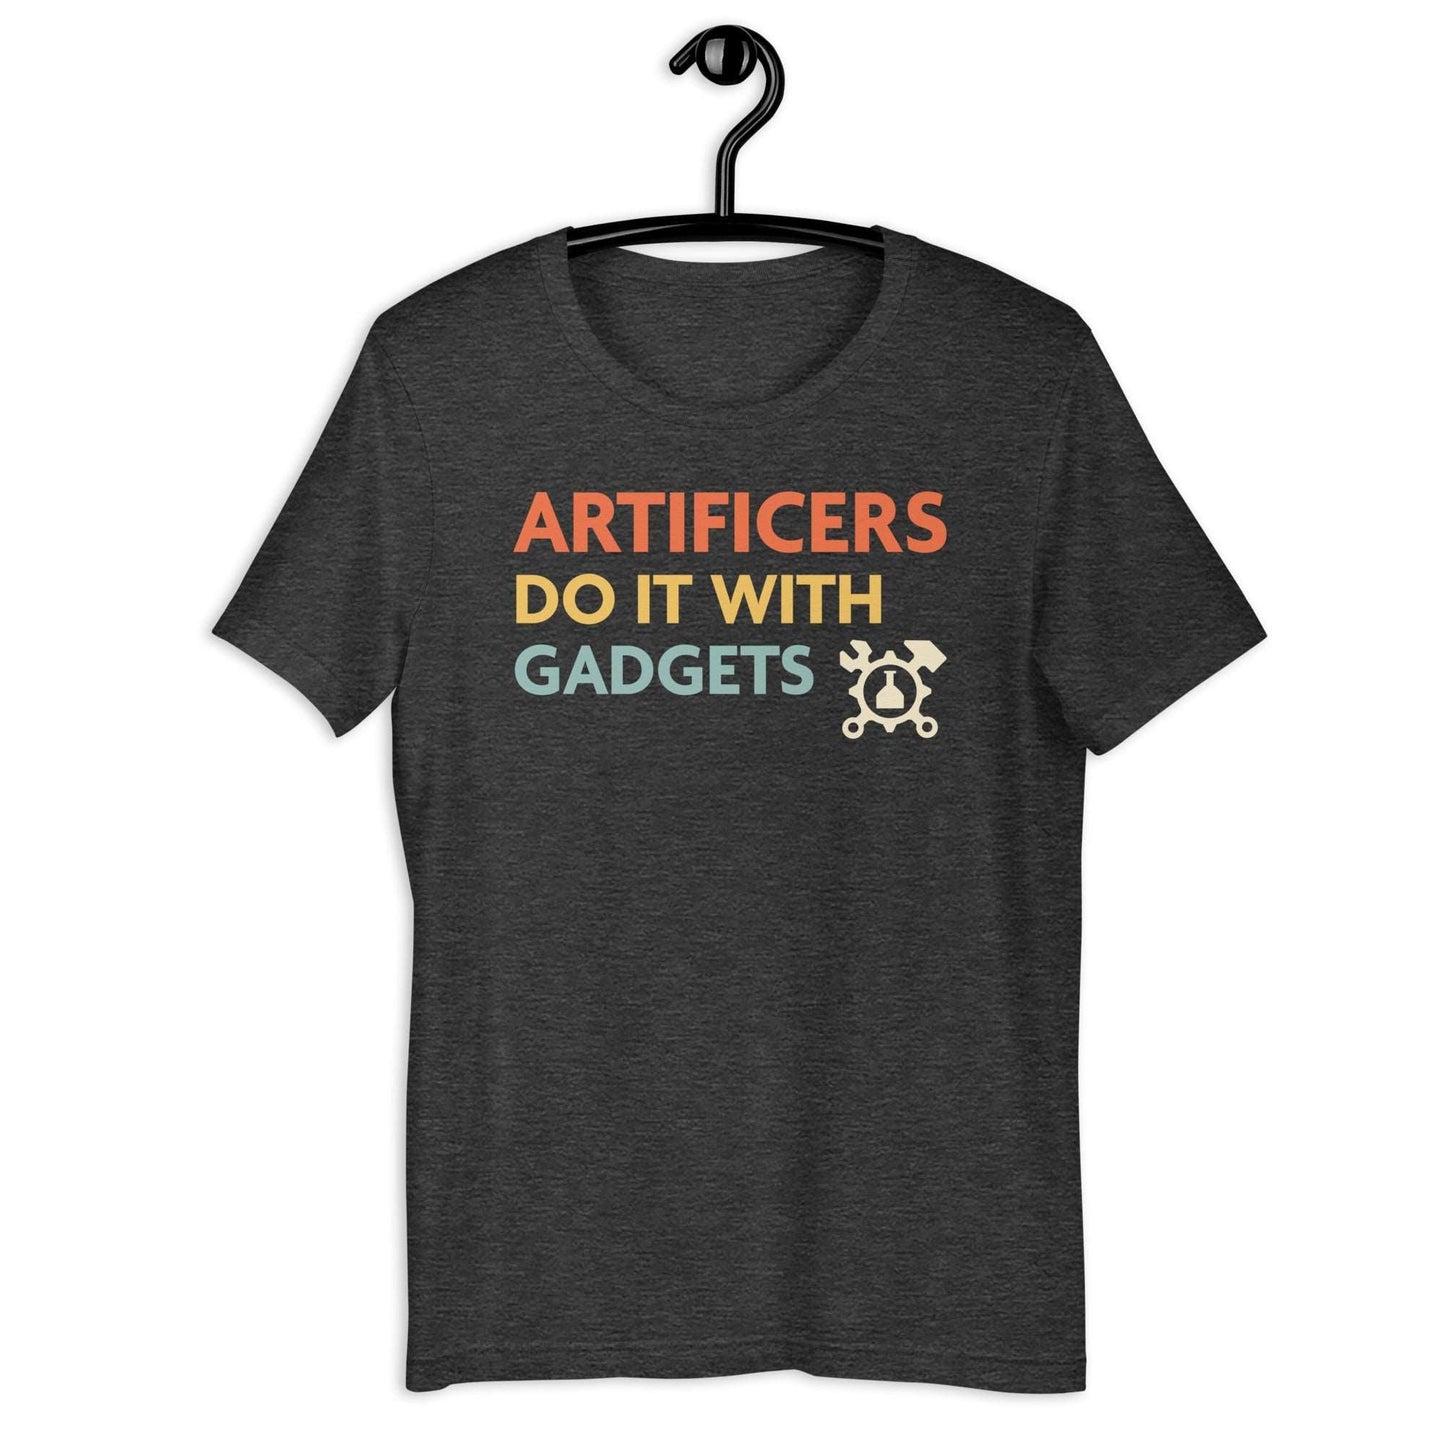 Artificers Do It With Gadgets T-Shirt – D&D Artificer Class Tee T-Shirt Dark Grey Heather / S